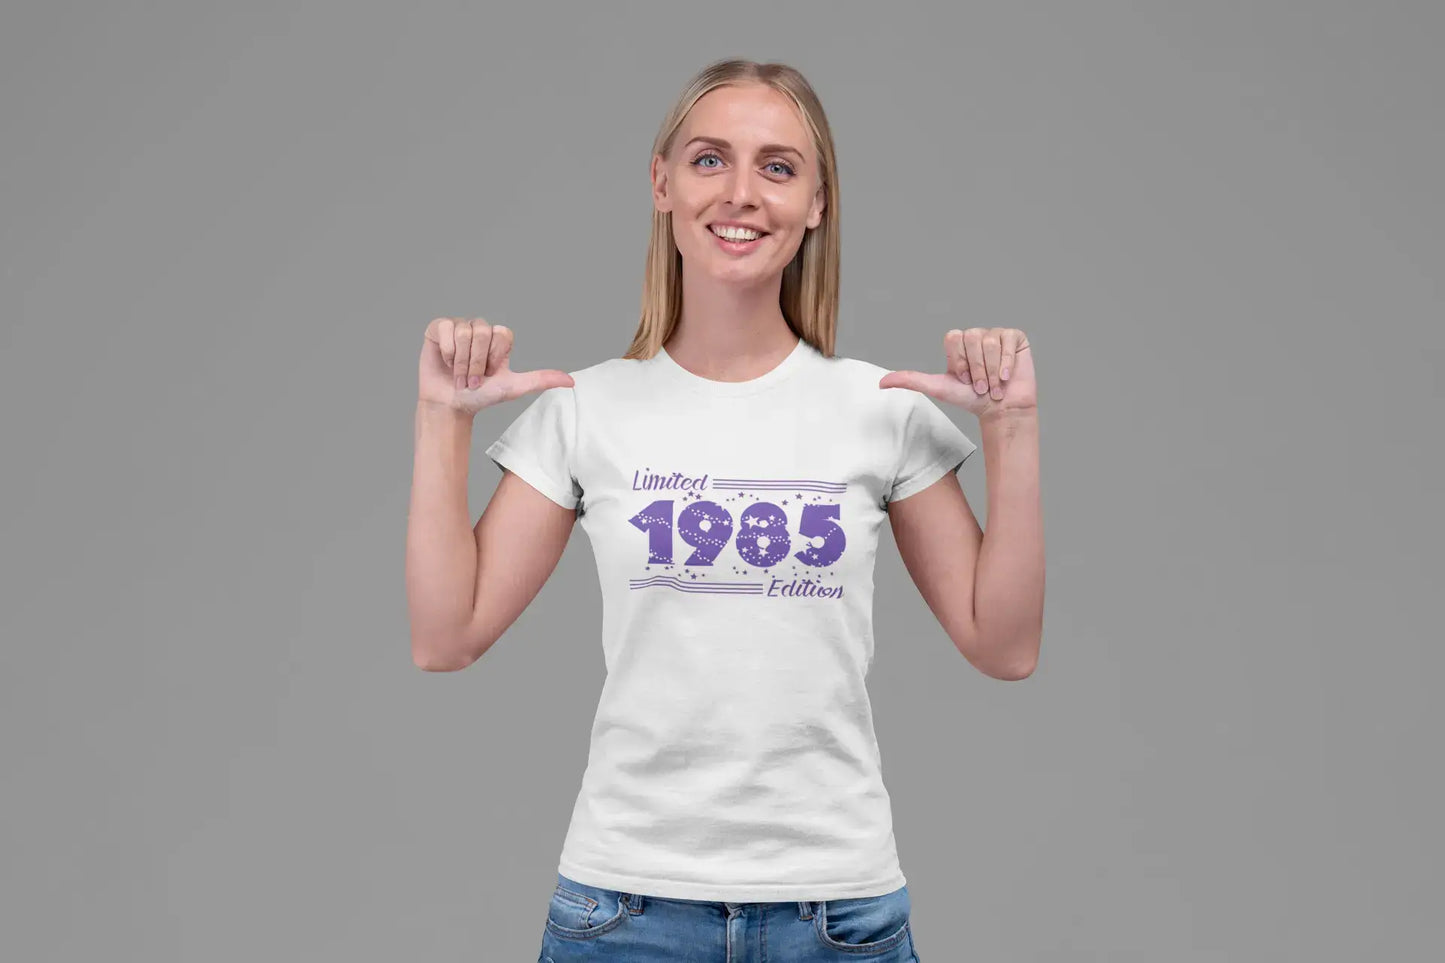 Star en édition limitée de 1985, T-shirt pour femmes, blanc, cadeau d'anniversaire 00382